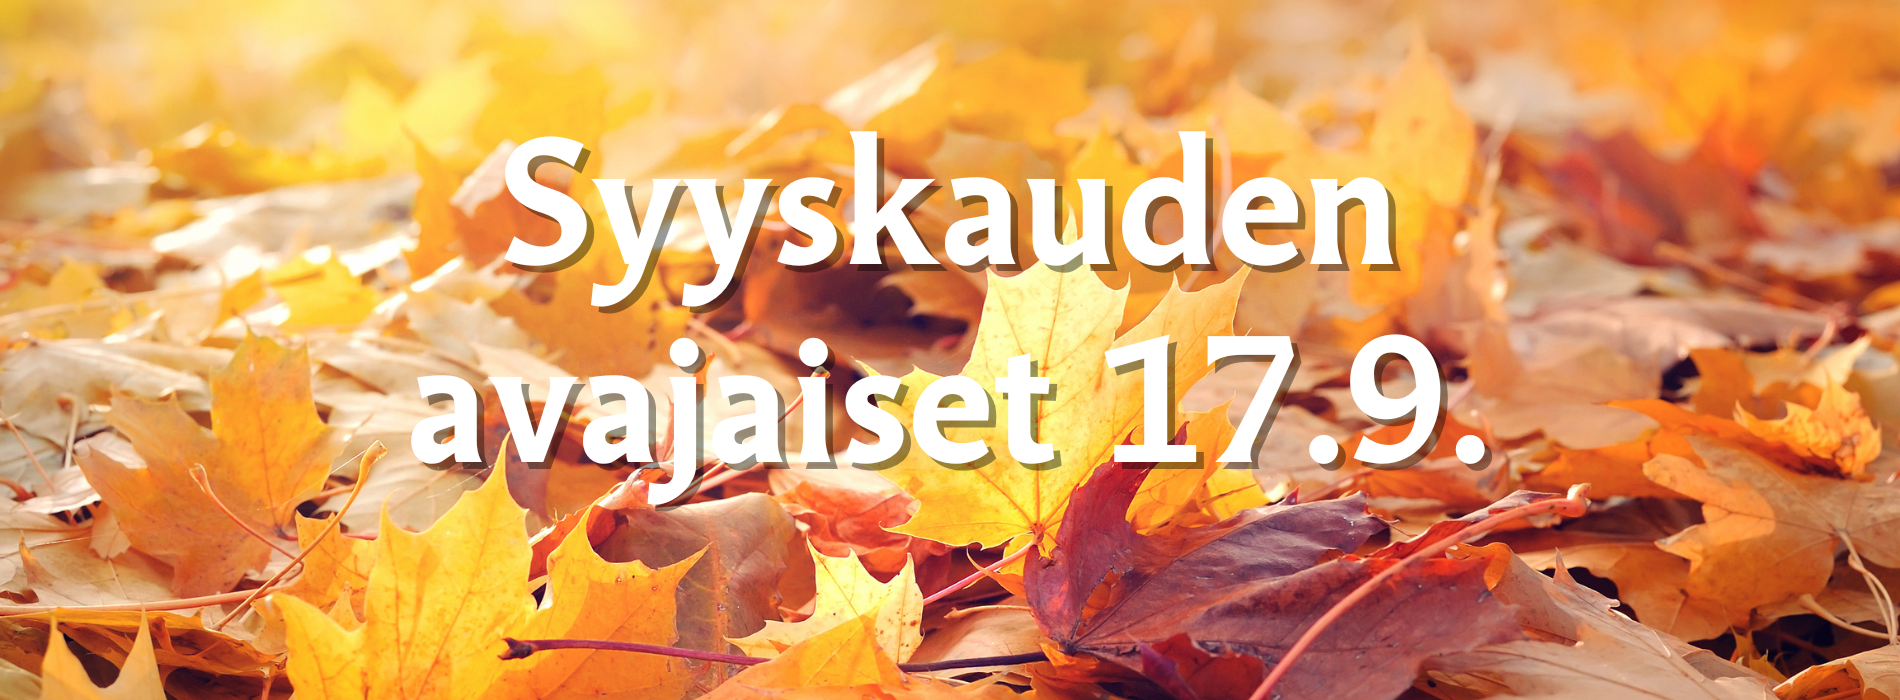 Keltaisia ja ruskeansävyisiä vaahteranlehtiä ja teksti: Syyskauden avajaiset 17.9.